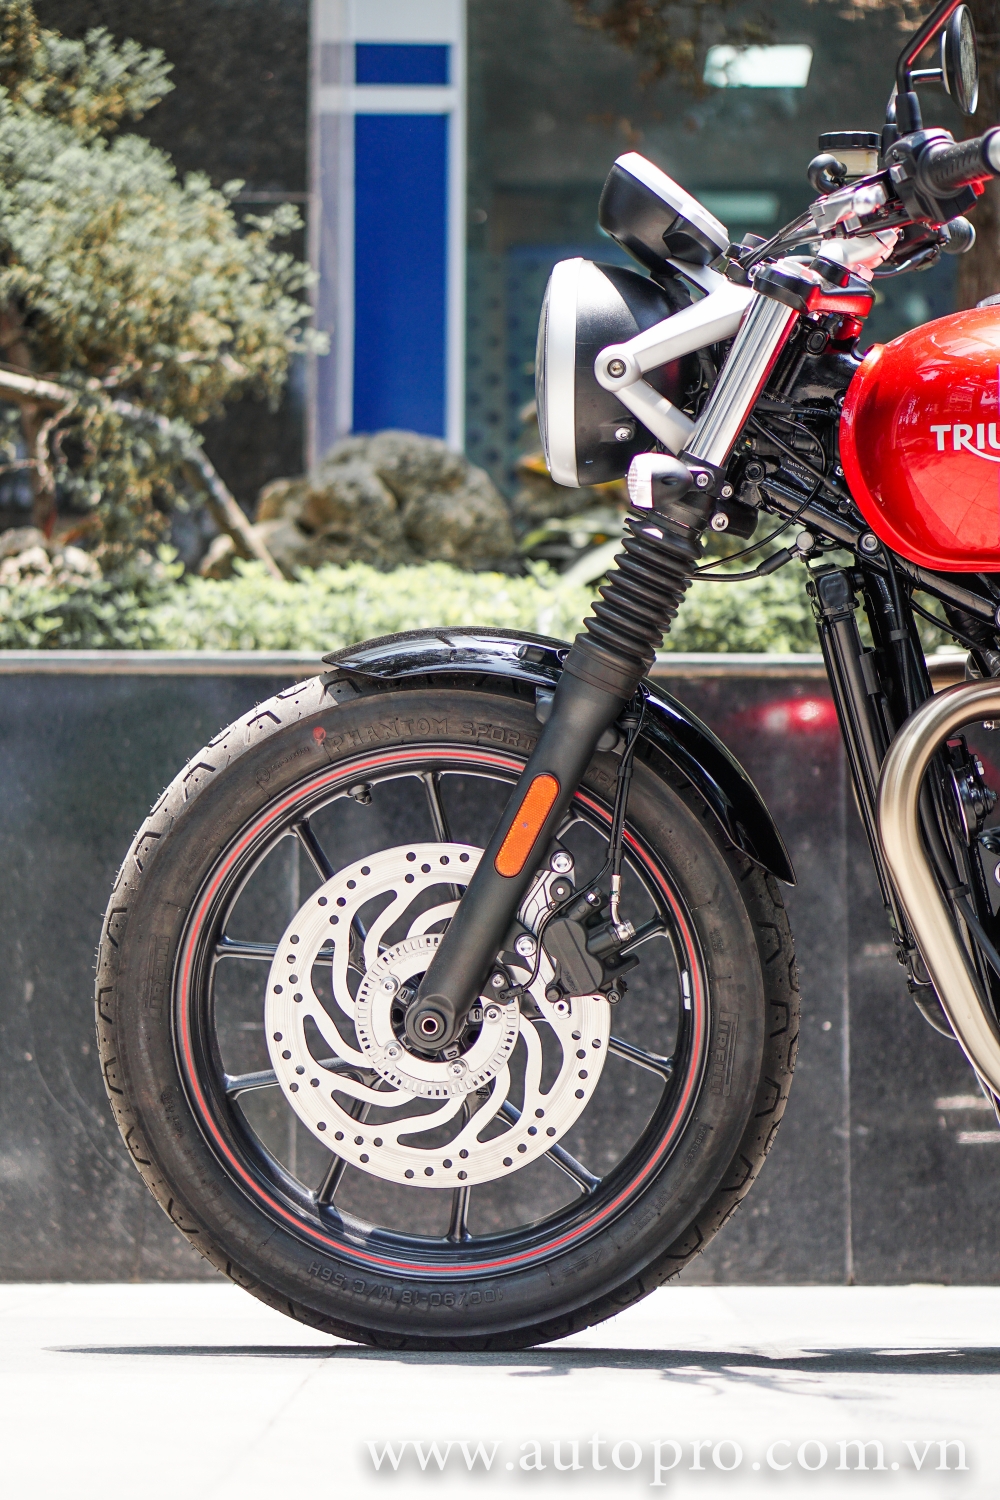 Can canh Triumph Street Twin 2016 doi thu cua Ducati Scrambler tai Viet Nam - 2